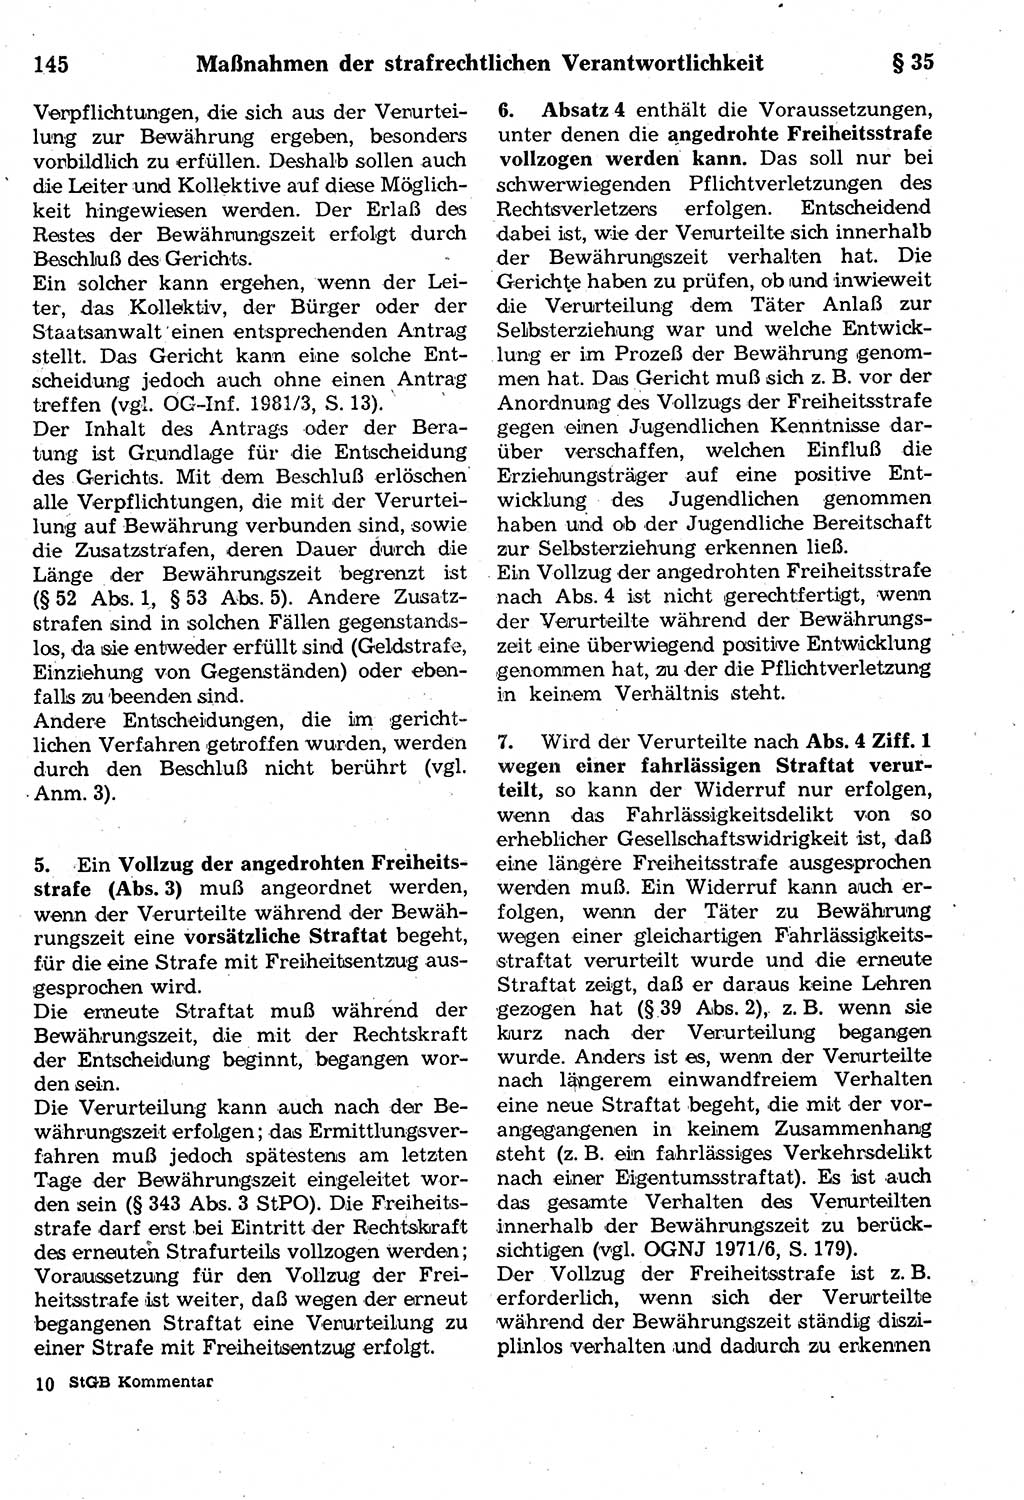 Strafrecht der Deutschen Demokratischen Republik (DDR), Kommentar zum Strafgesetzbuch (StGB) 1987, Seite 145 (Strafr. DDR Komm. StGB 1987, S. 145)